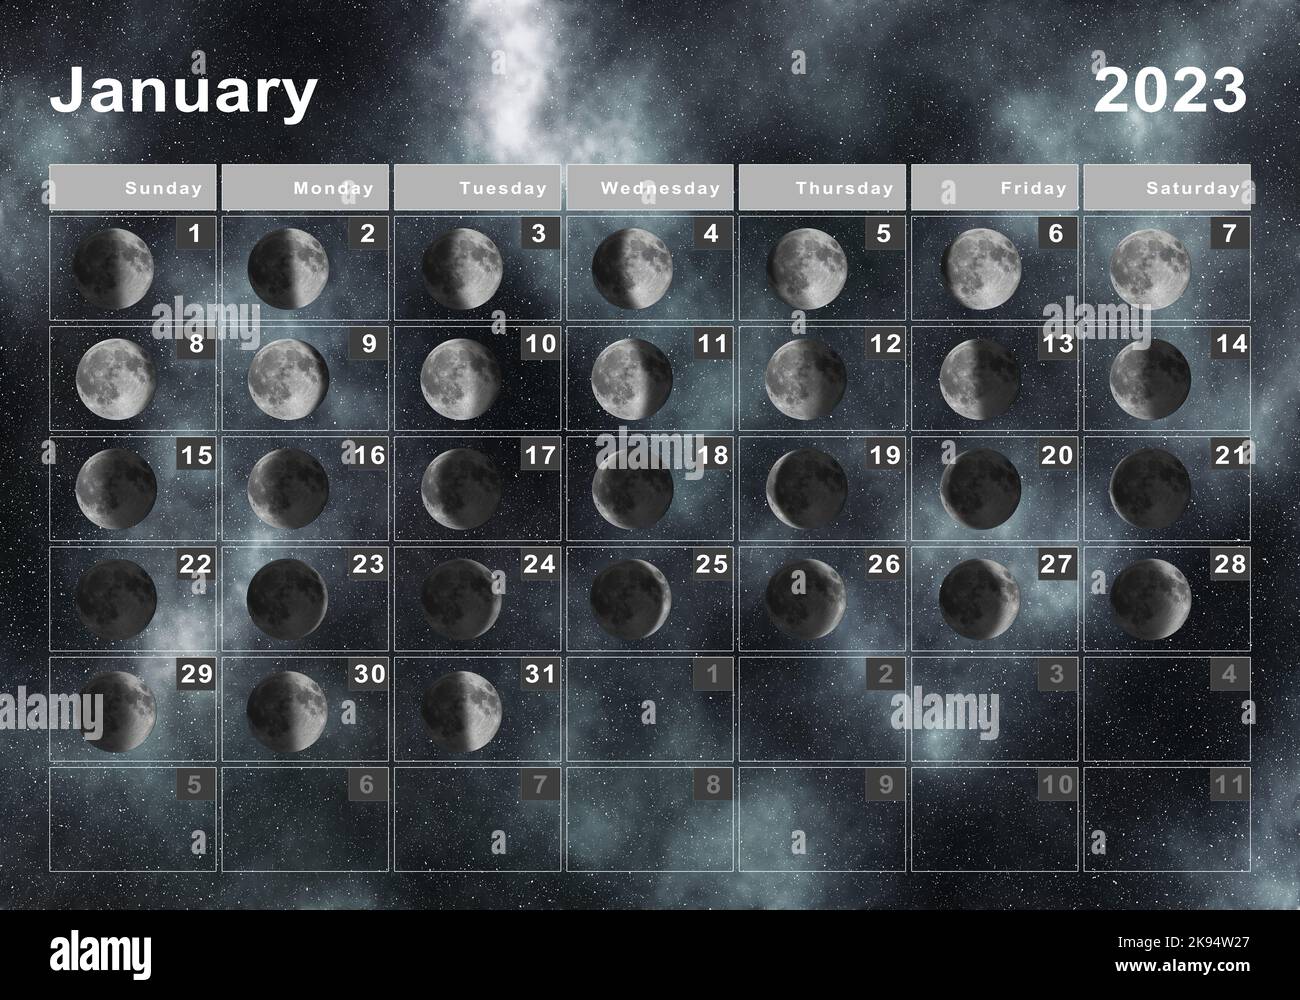 Moon Calendar 2023. Лунный календарь на январь 2023. Лунный календарь маникюра на 2023 год. Лунный календарь заполняем луну.